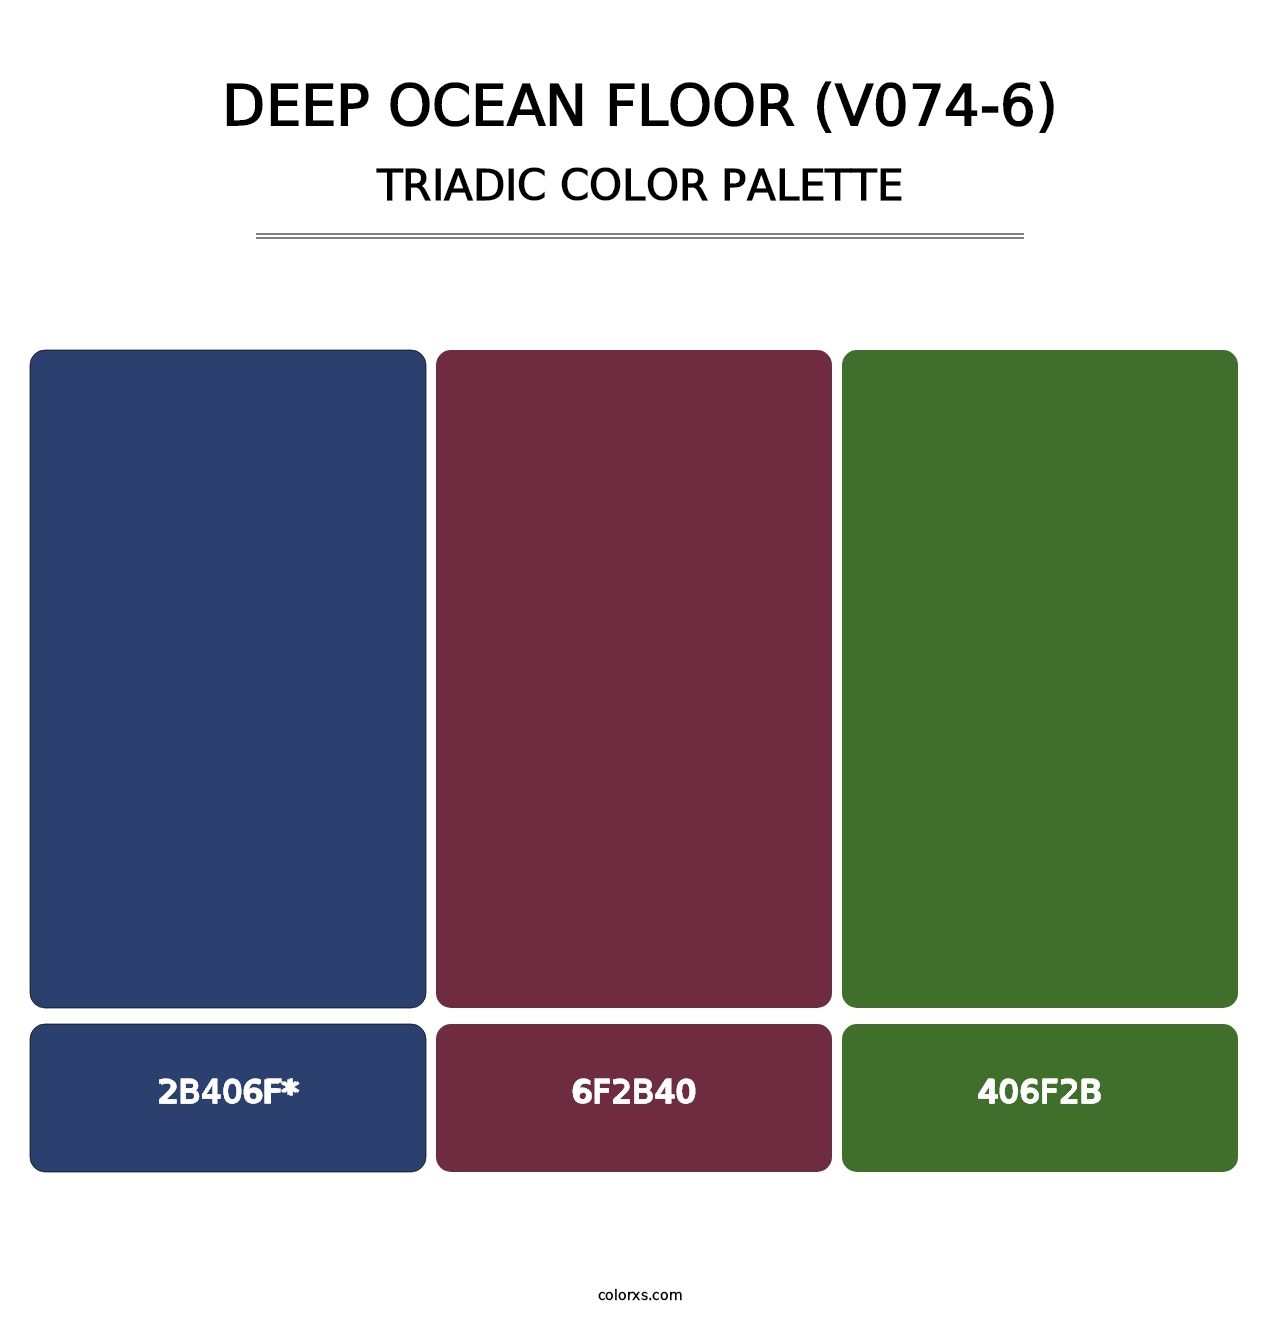 Deep Ocean Floor (V074-6) - Triadic Color Palette